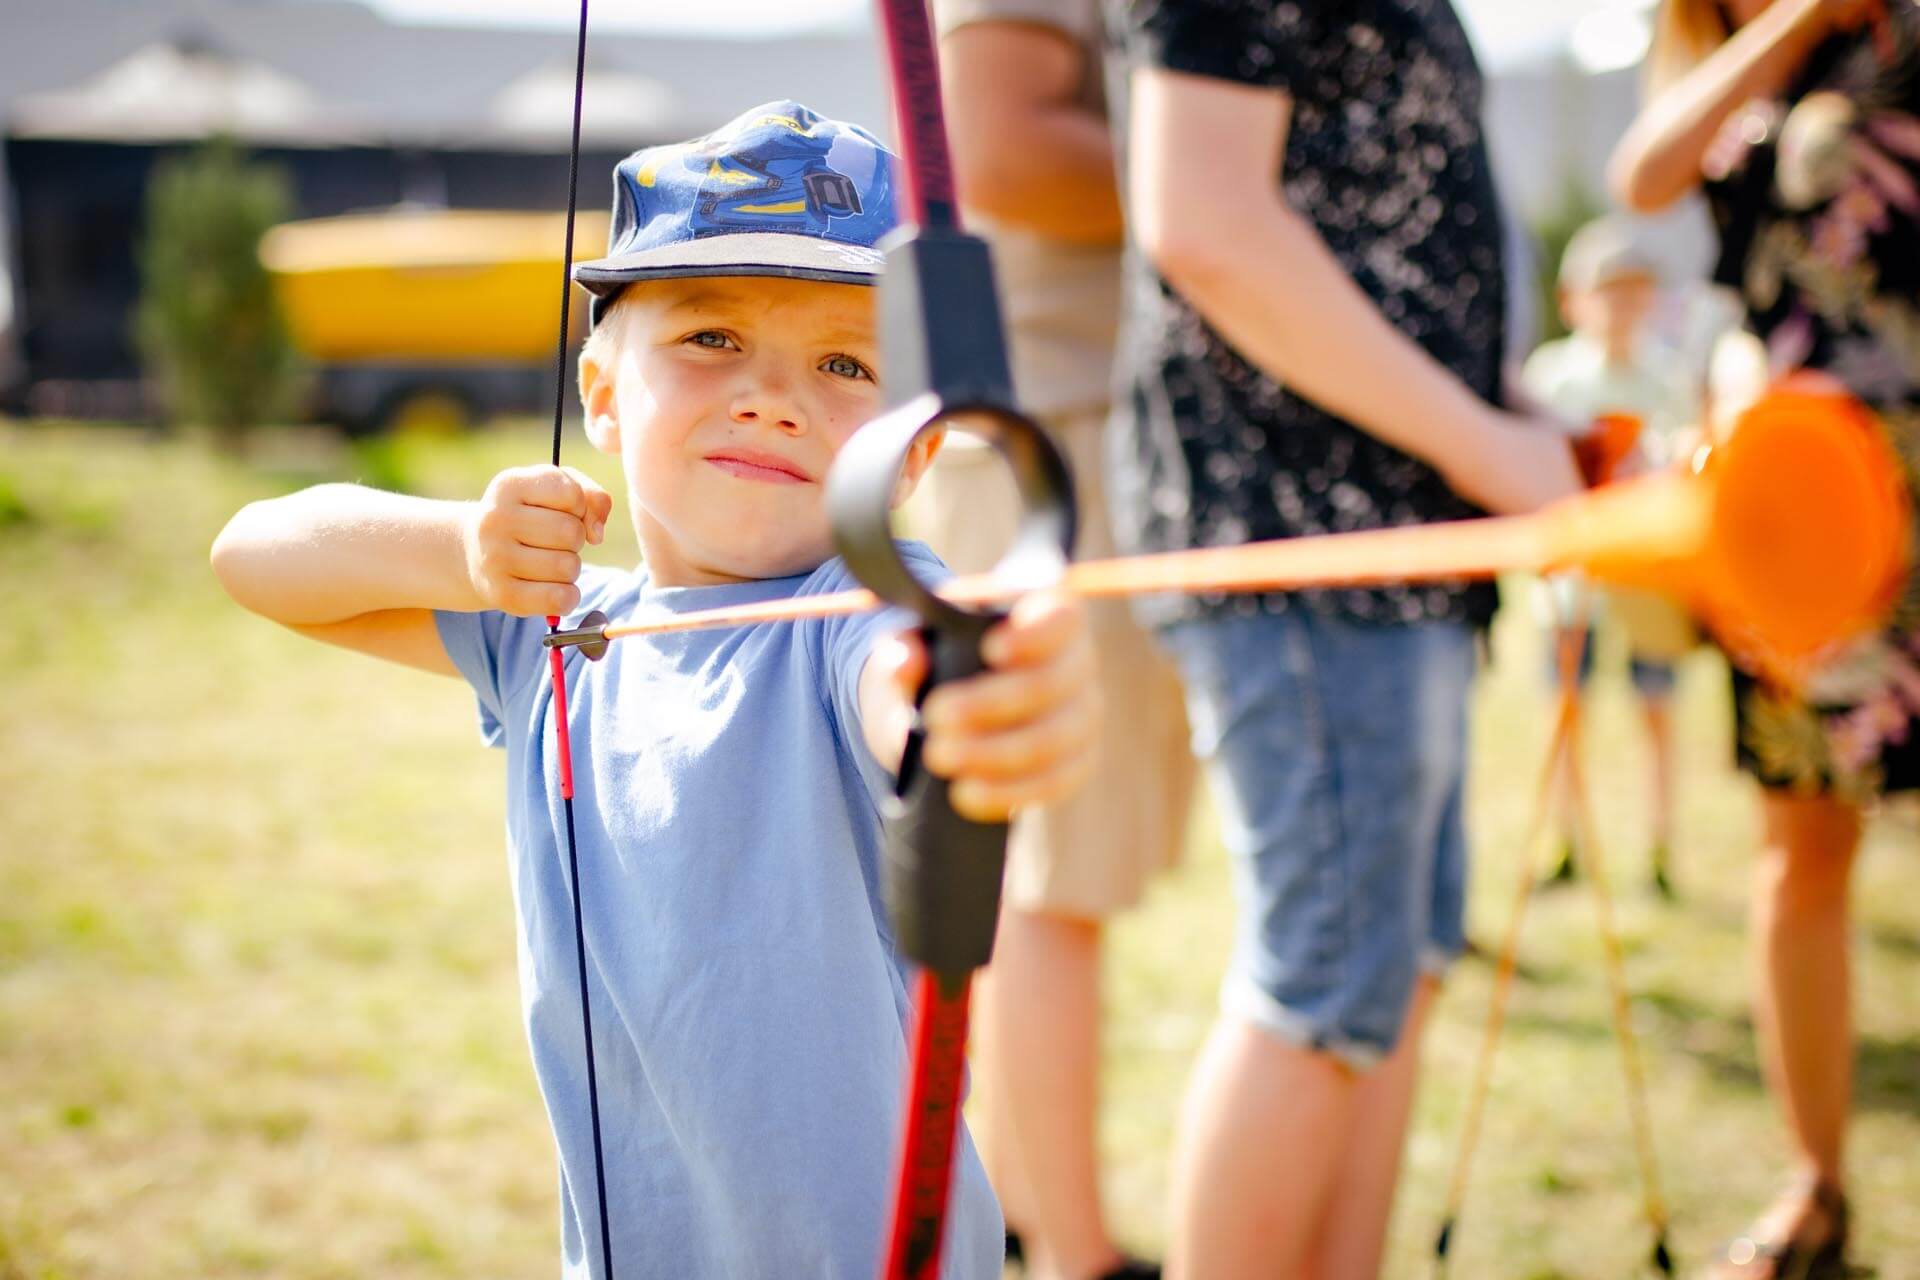 a boy holding a bow and arrow